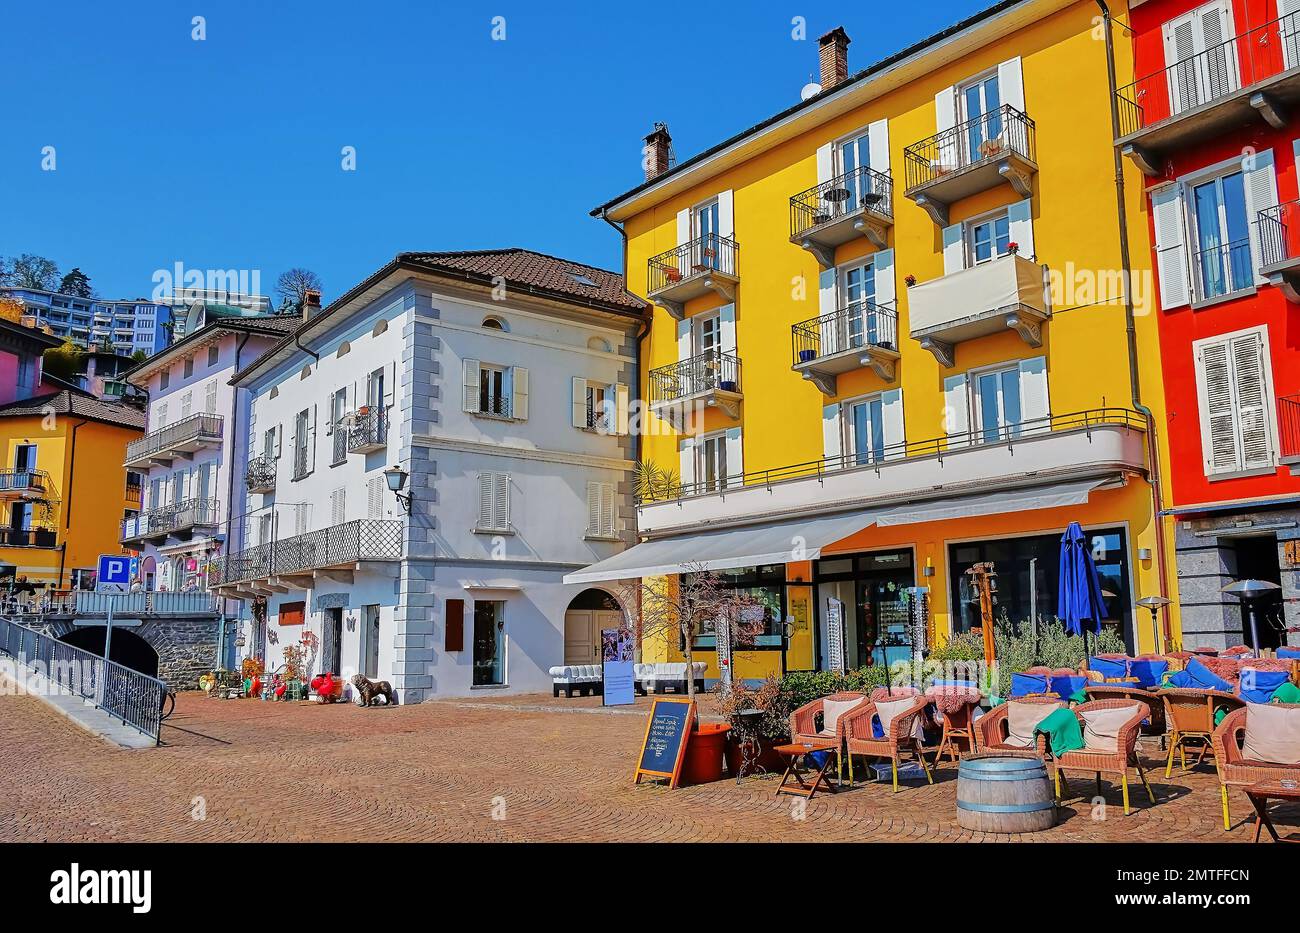 Los coloridos edificios de pequeños hoteles, restaurantes y tiendas de recuerdos dan a la Piazza Giuseppe Motta, junto al lago, en Ascona, Suiza Foto de stock